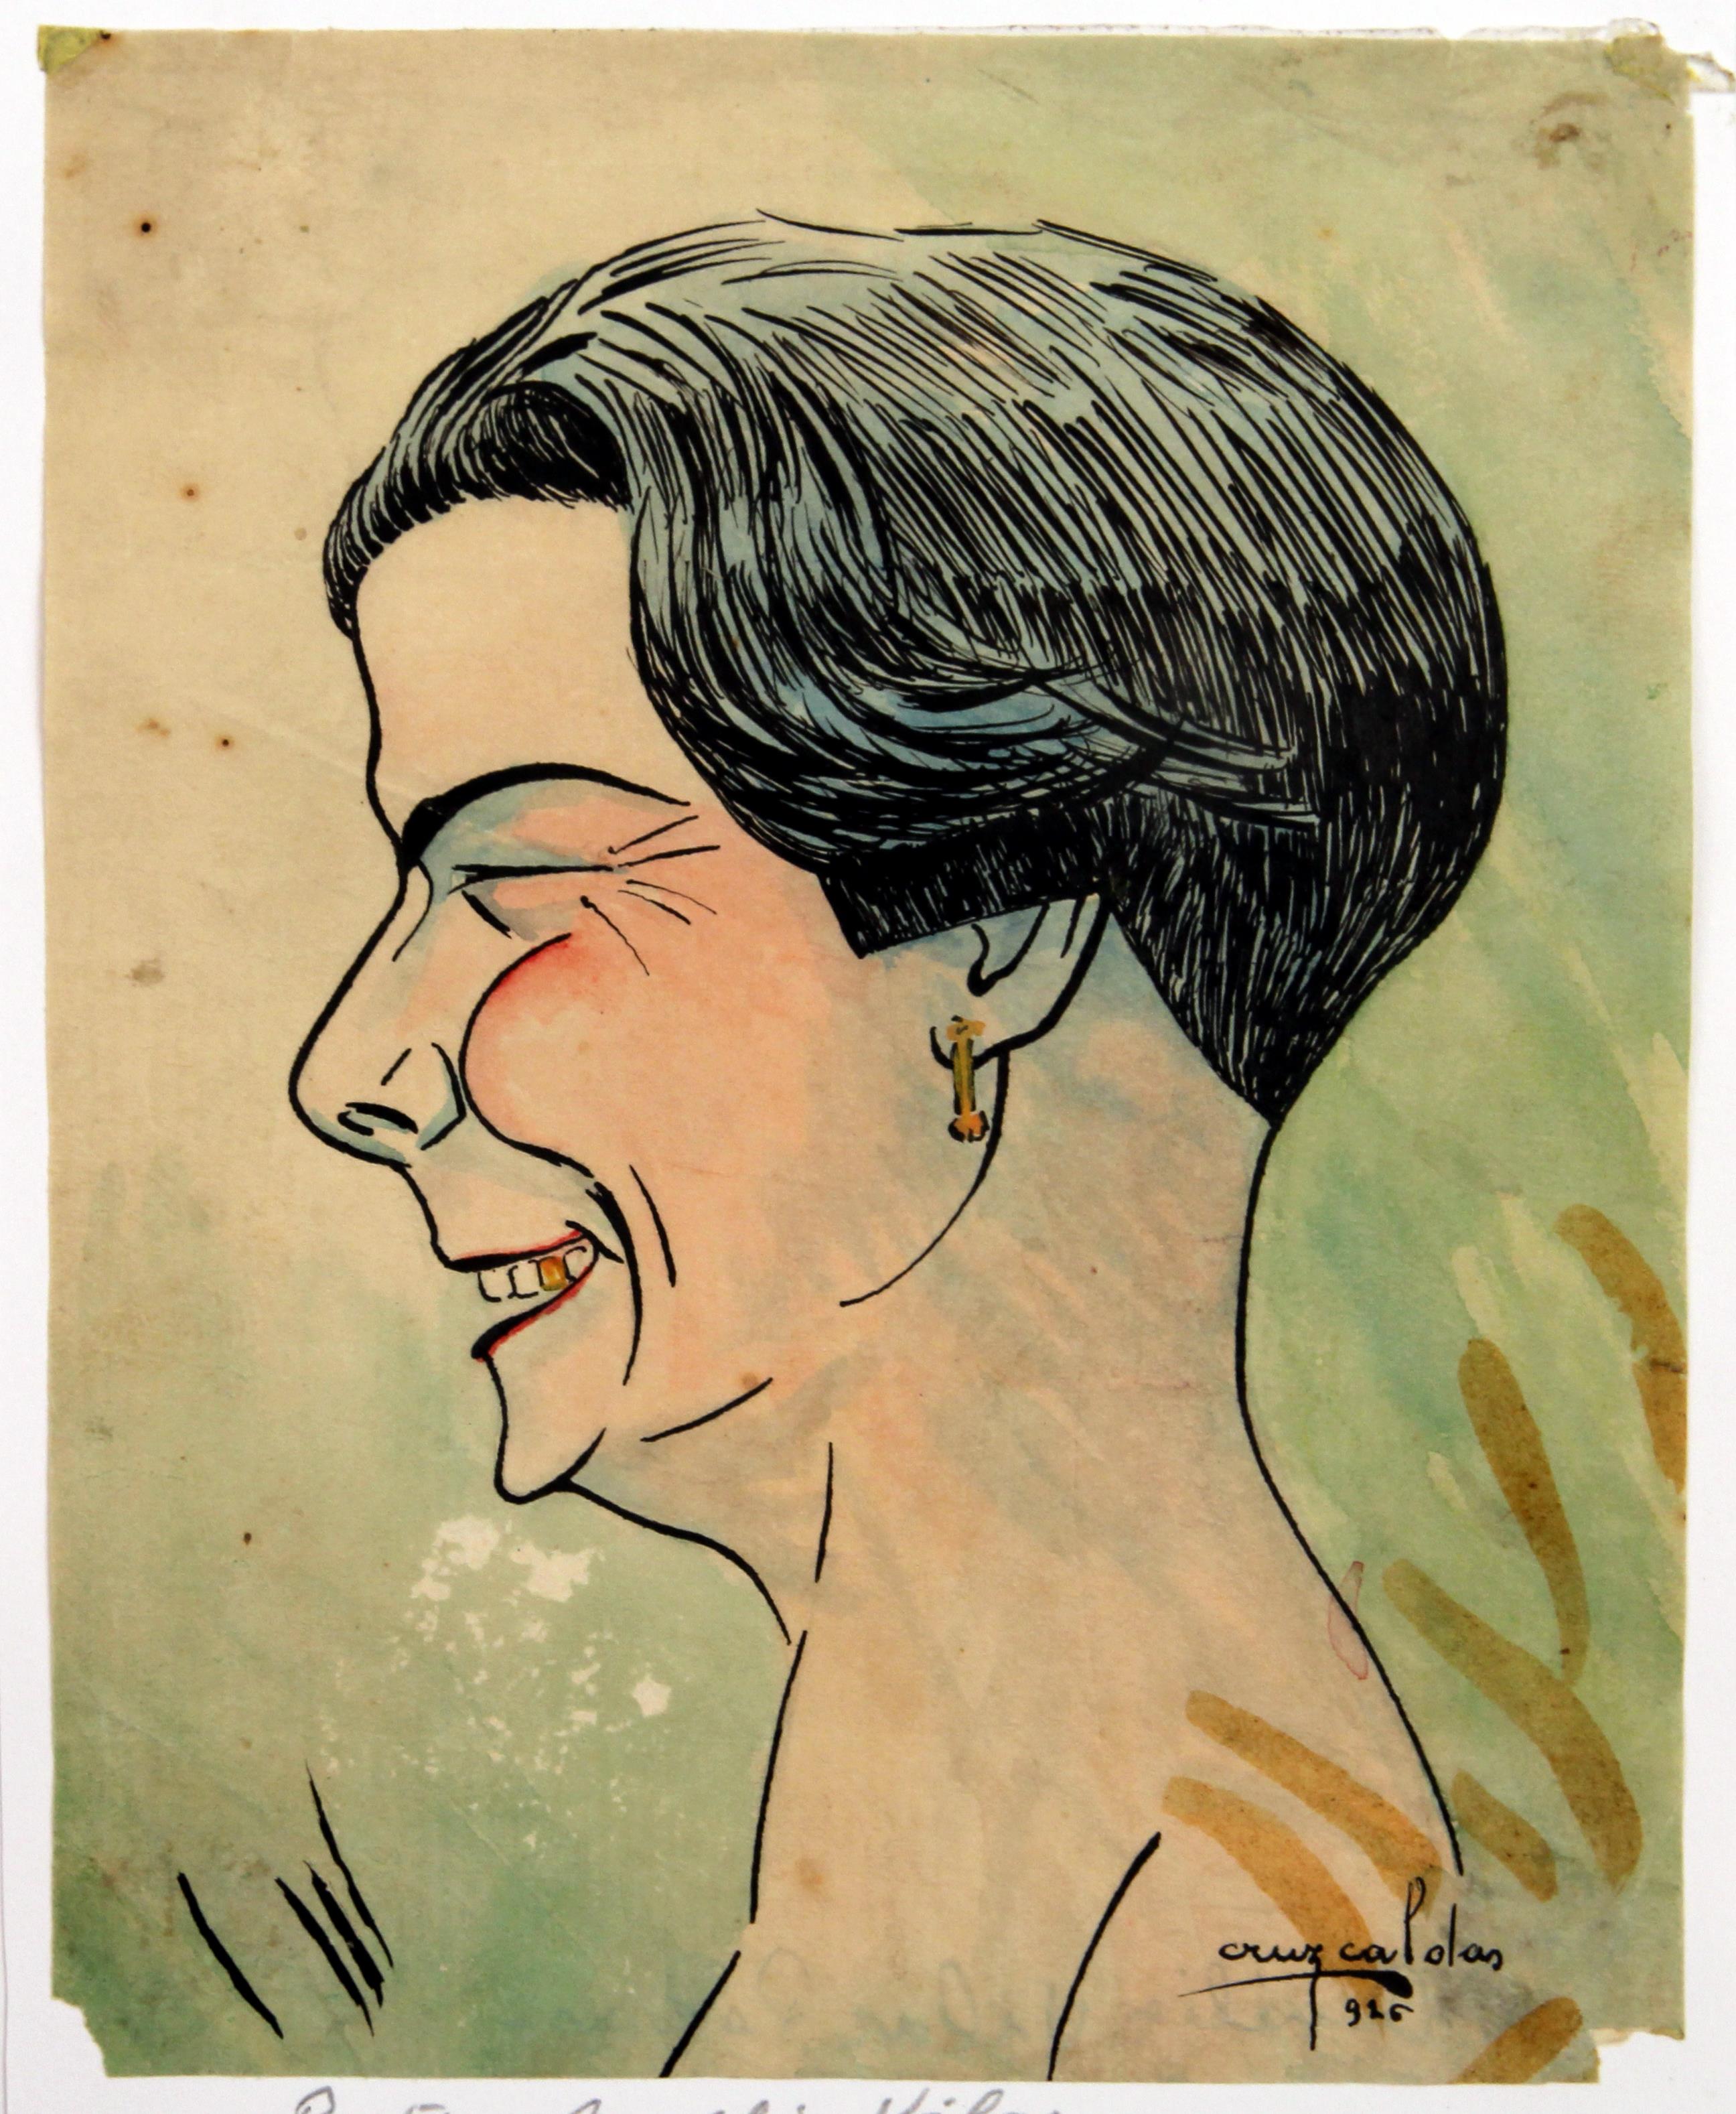 Cruz Caldas e a poetisa Amélia Vilar : «Mulheres do Norte» : caricatura da Diretora Amélia Vilar